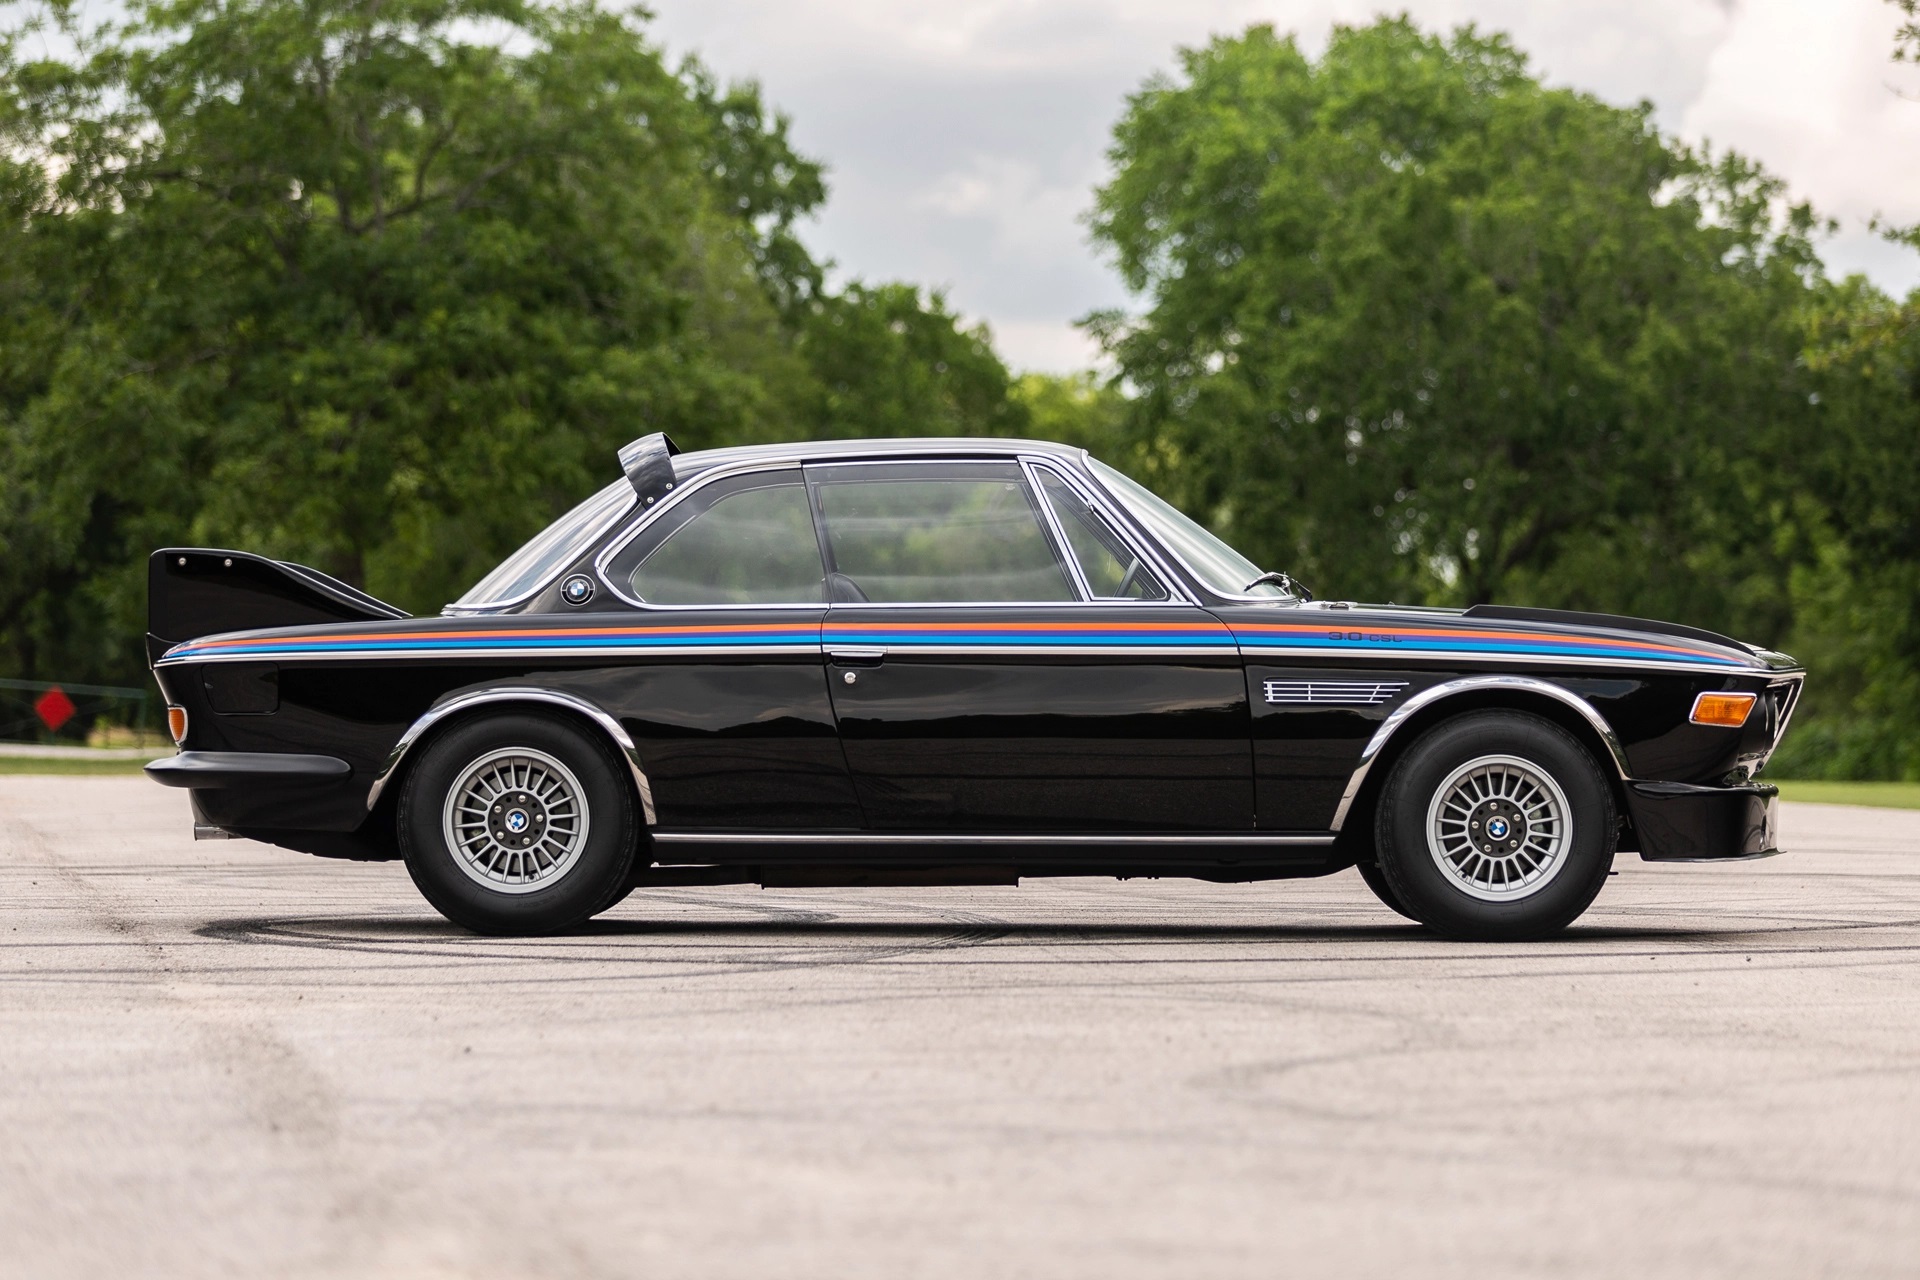 Πωλείται αυτή η υπέροχη BMW 3.0 CSL του 1972